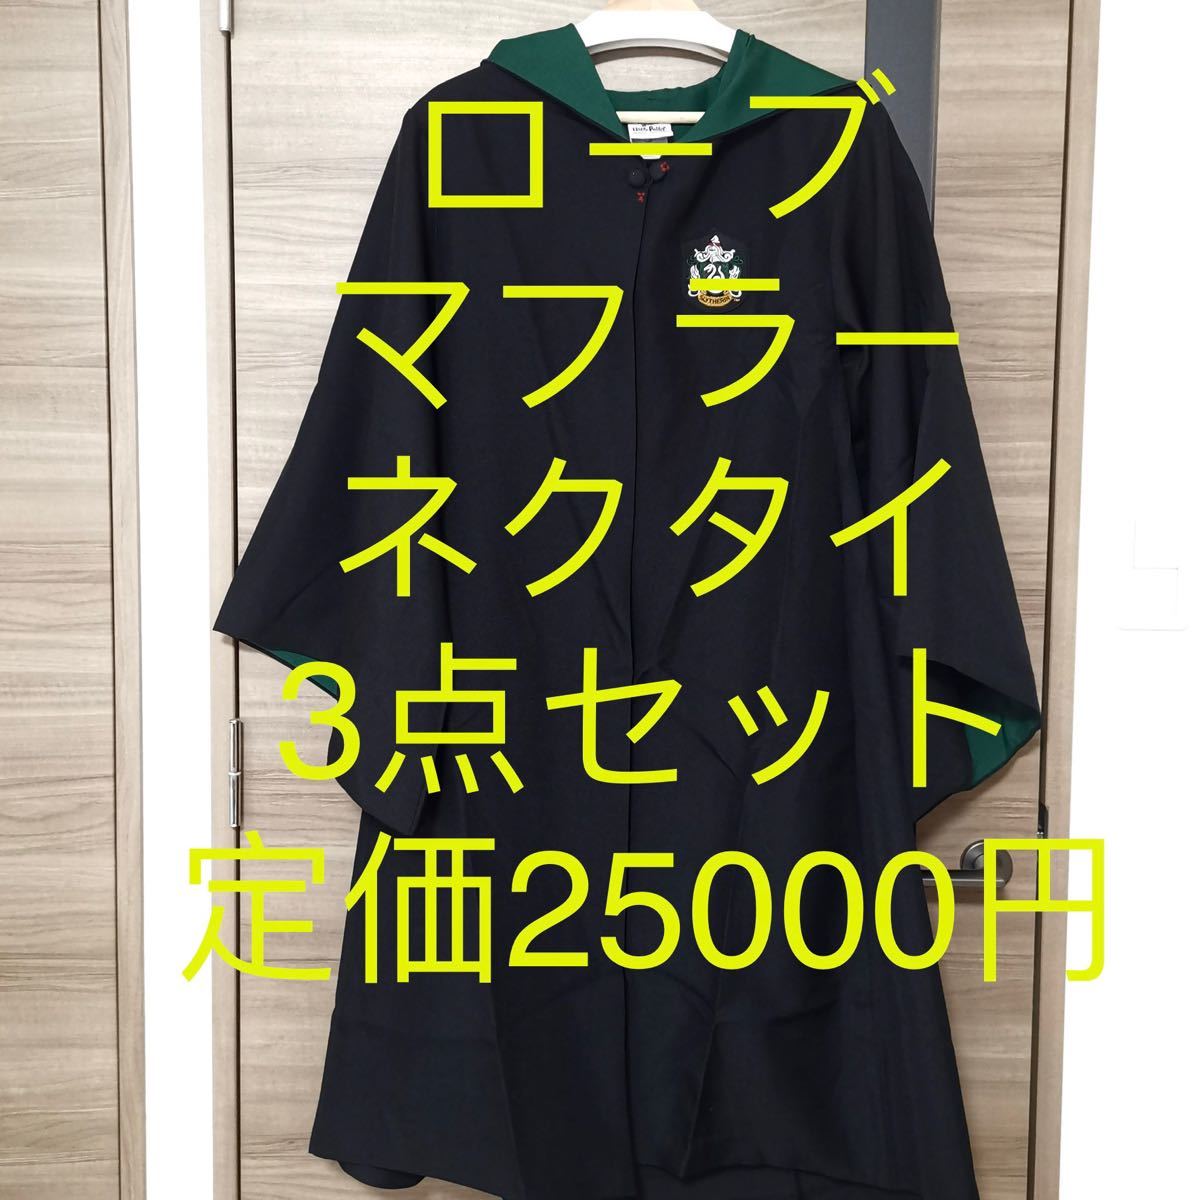 2549円 魅力の ハリーポッター スリザリン 公式 Sサイズ ローブ ネクタイ USJ